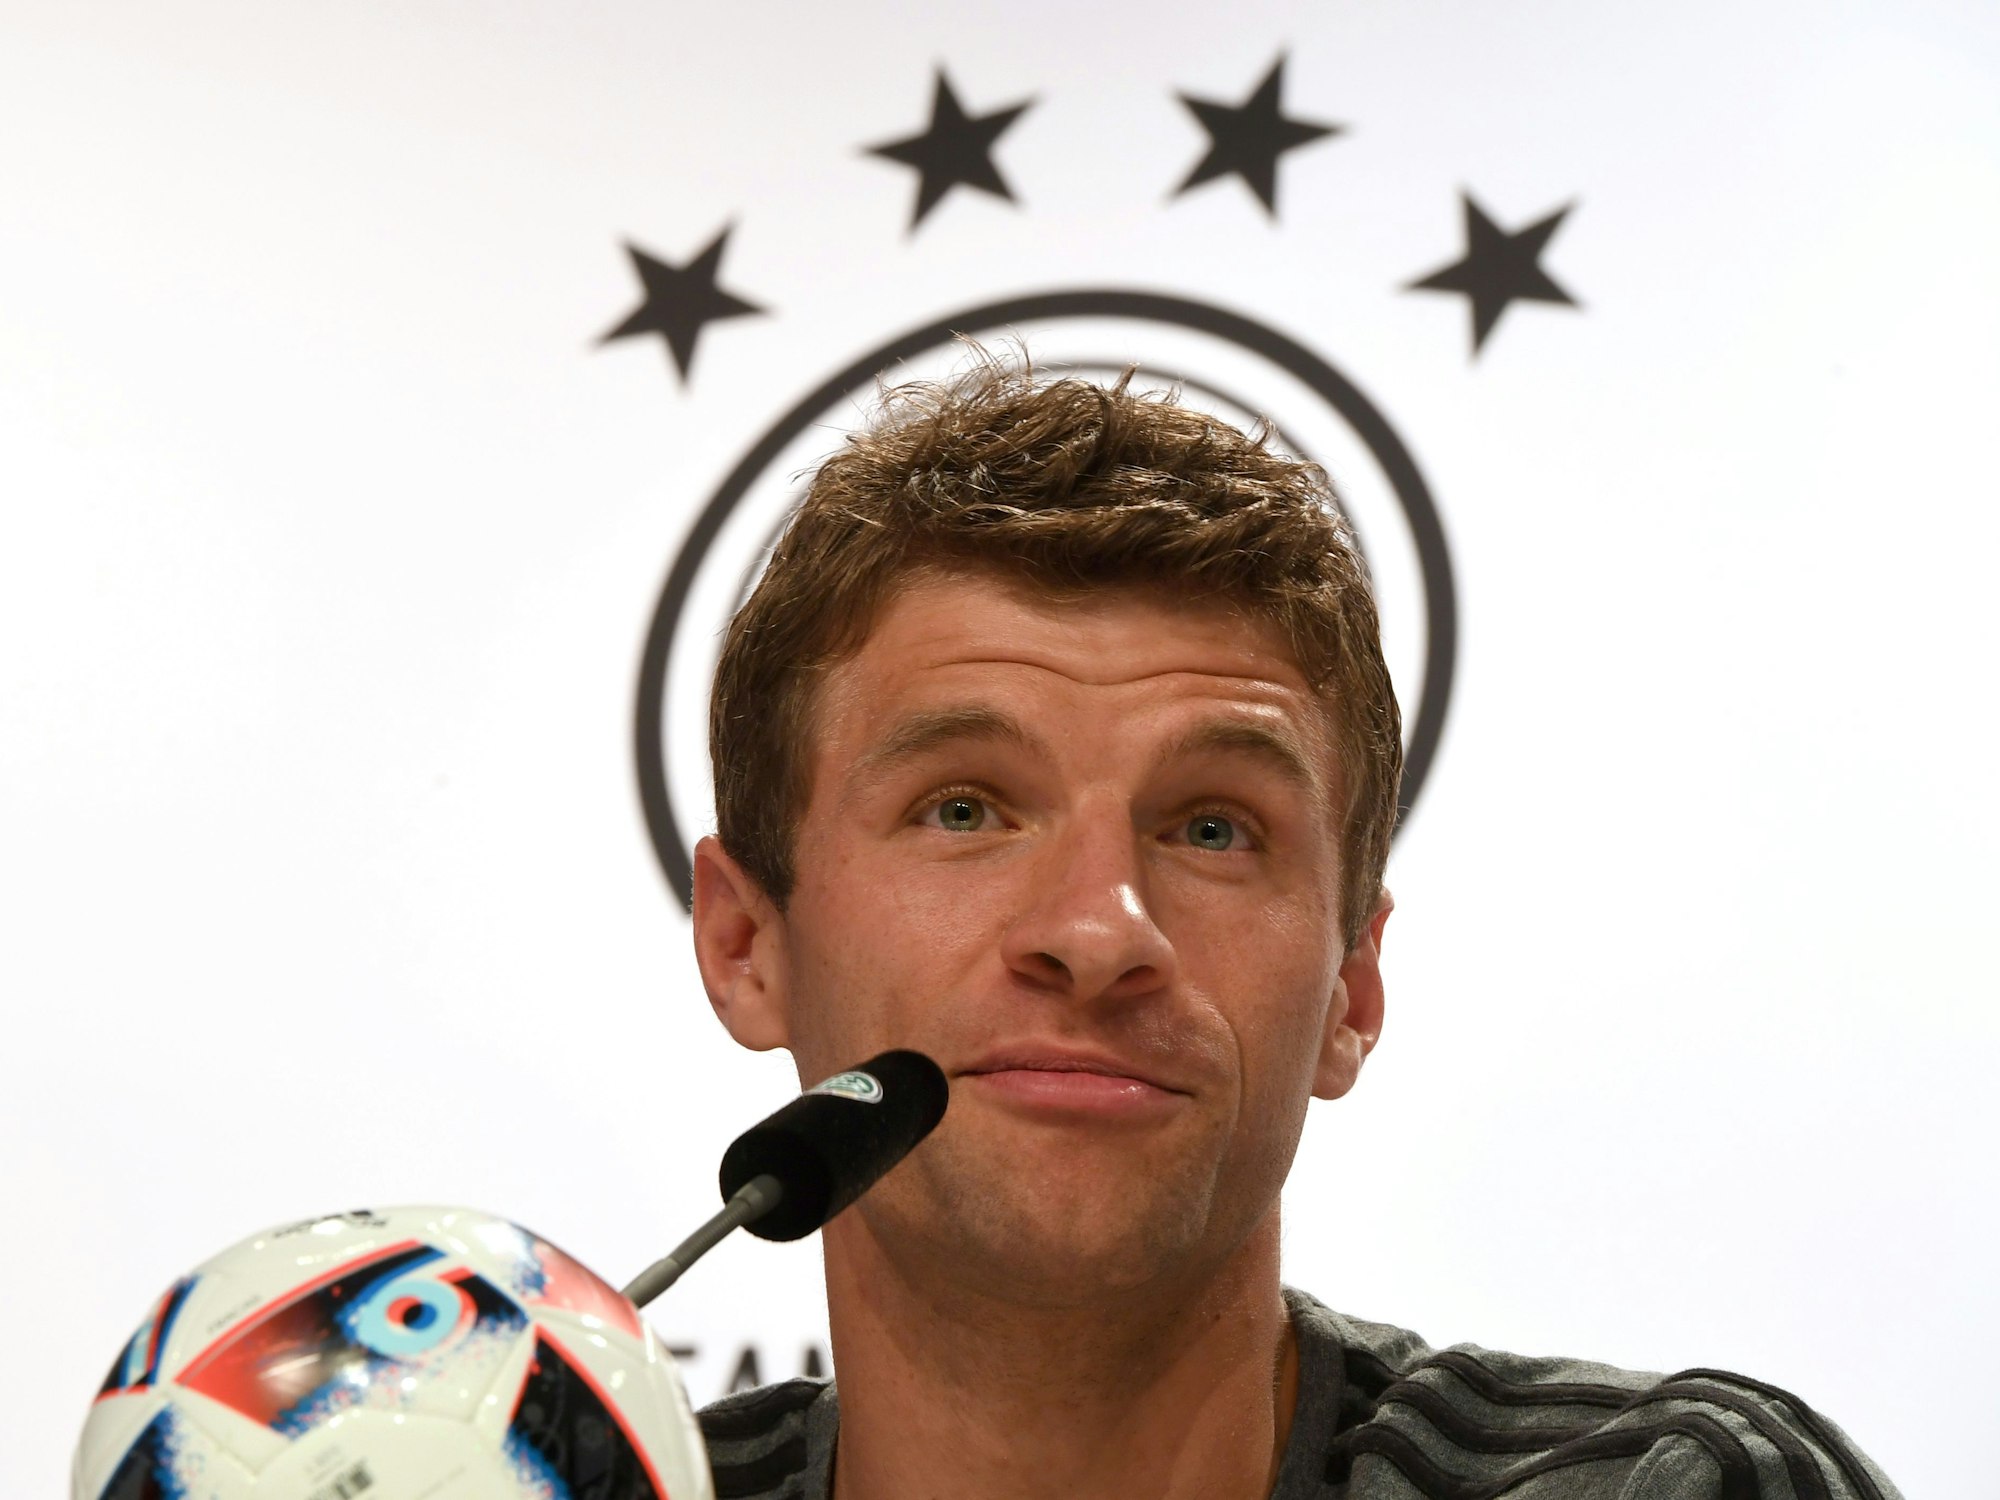 Thomas Müller spricht auf einer Pressekonferenz des DFB, er hat ein leichtes Lächeln im Gesicht.